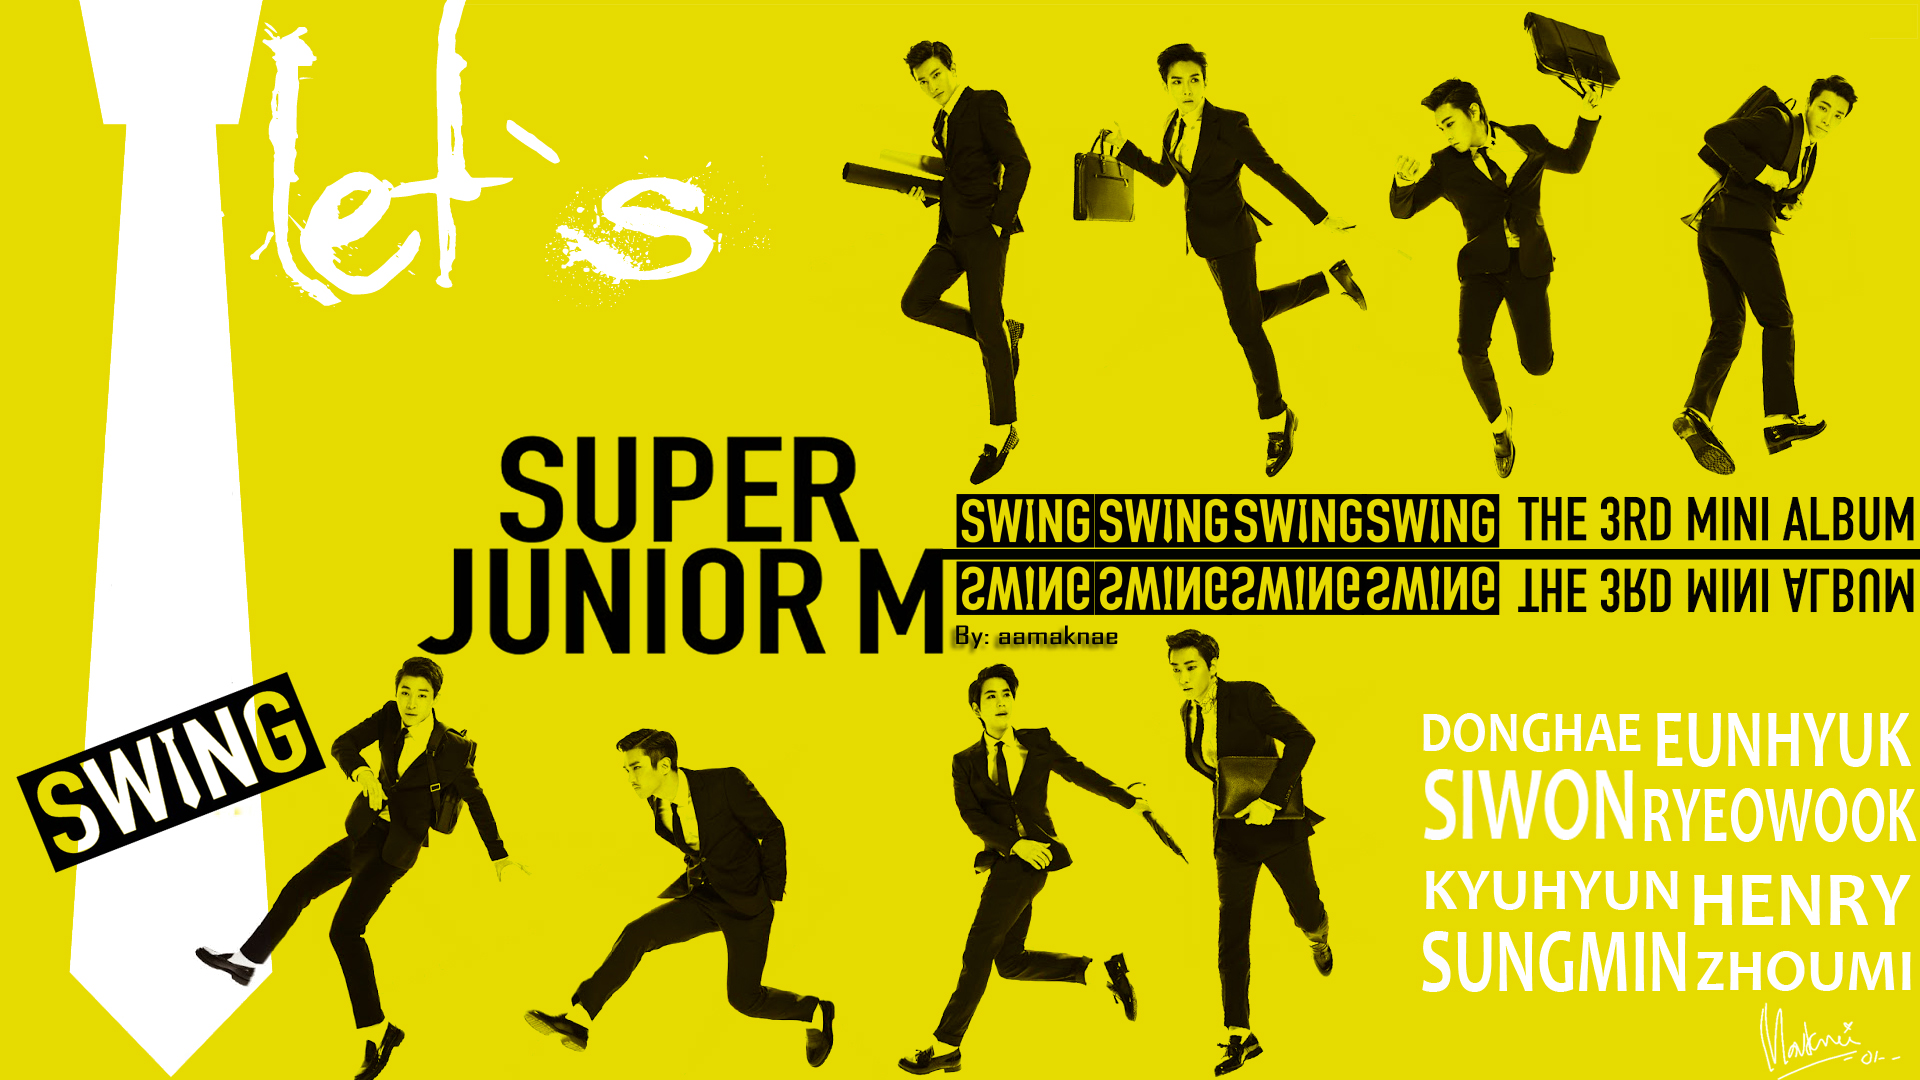 Download Lagu Super Junior M Swing Full Album